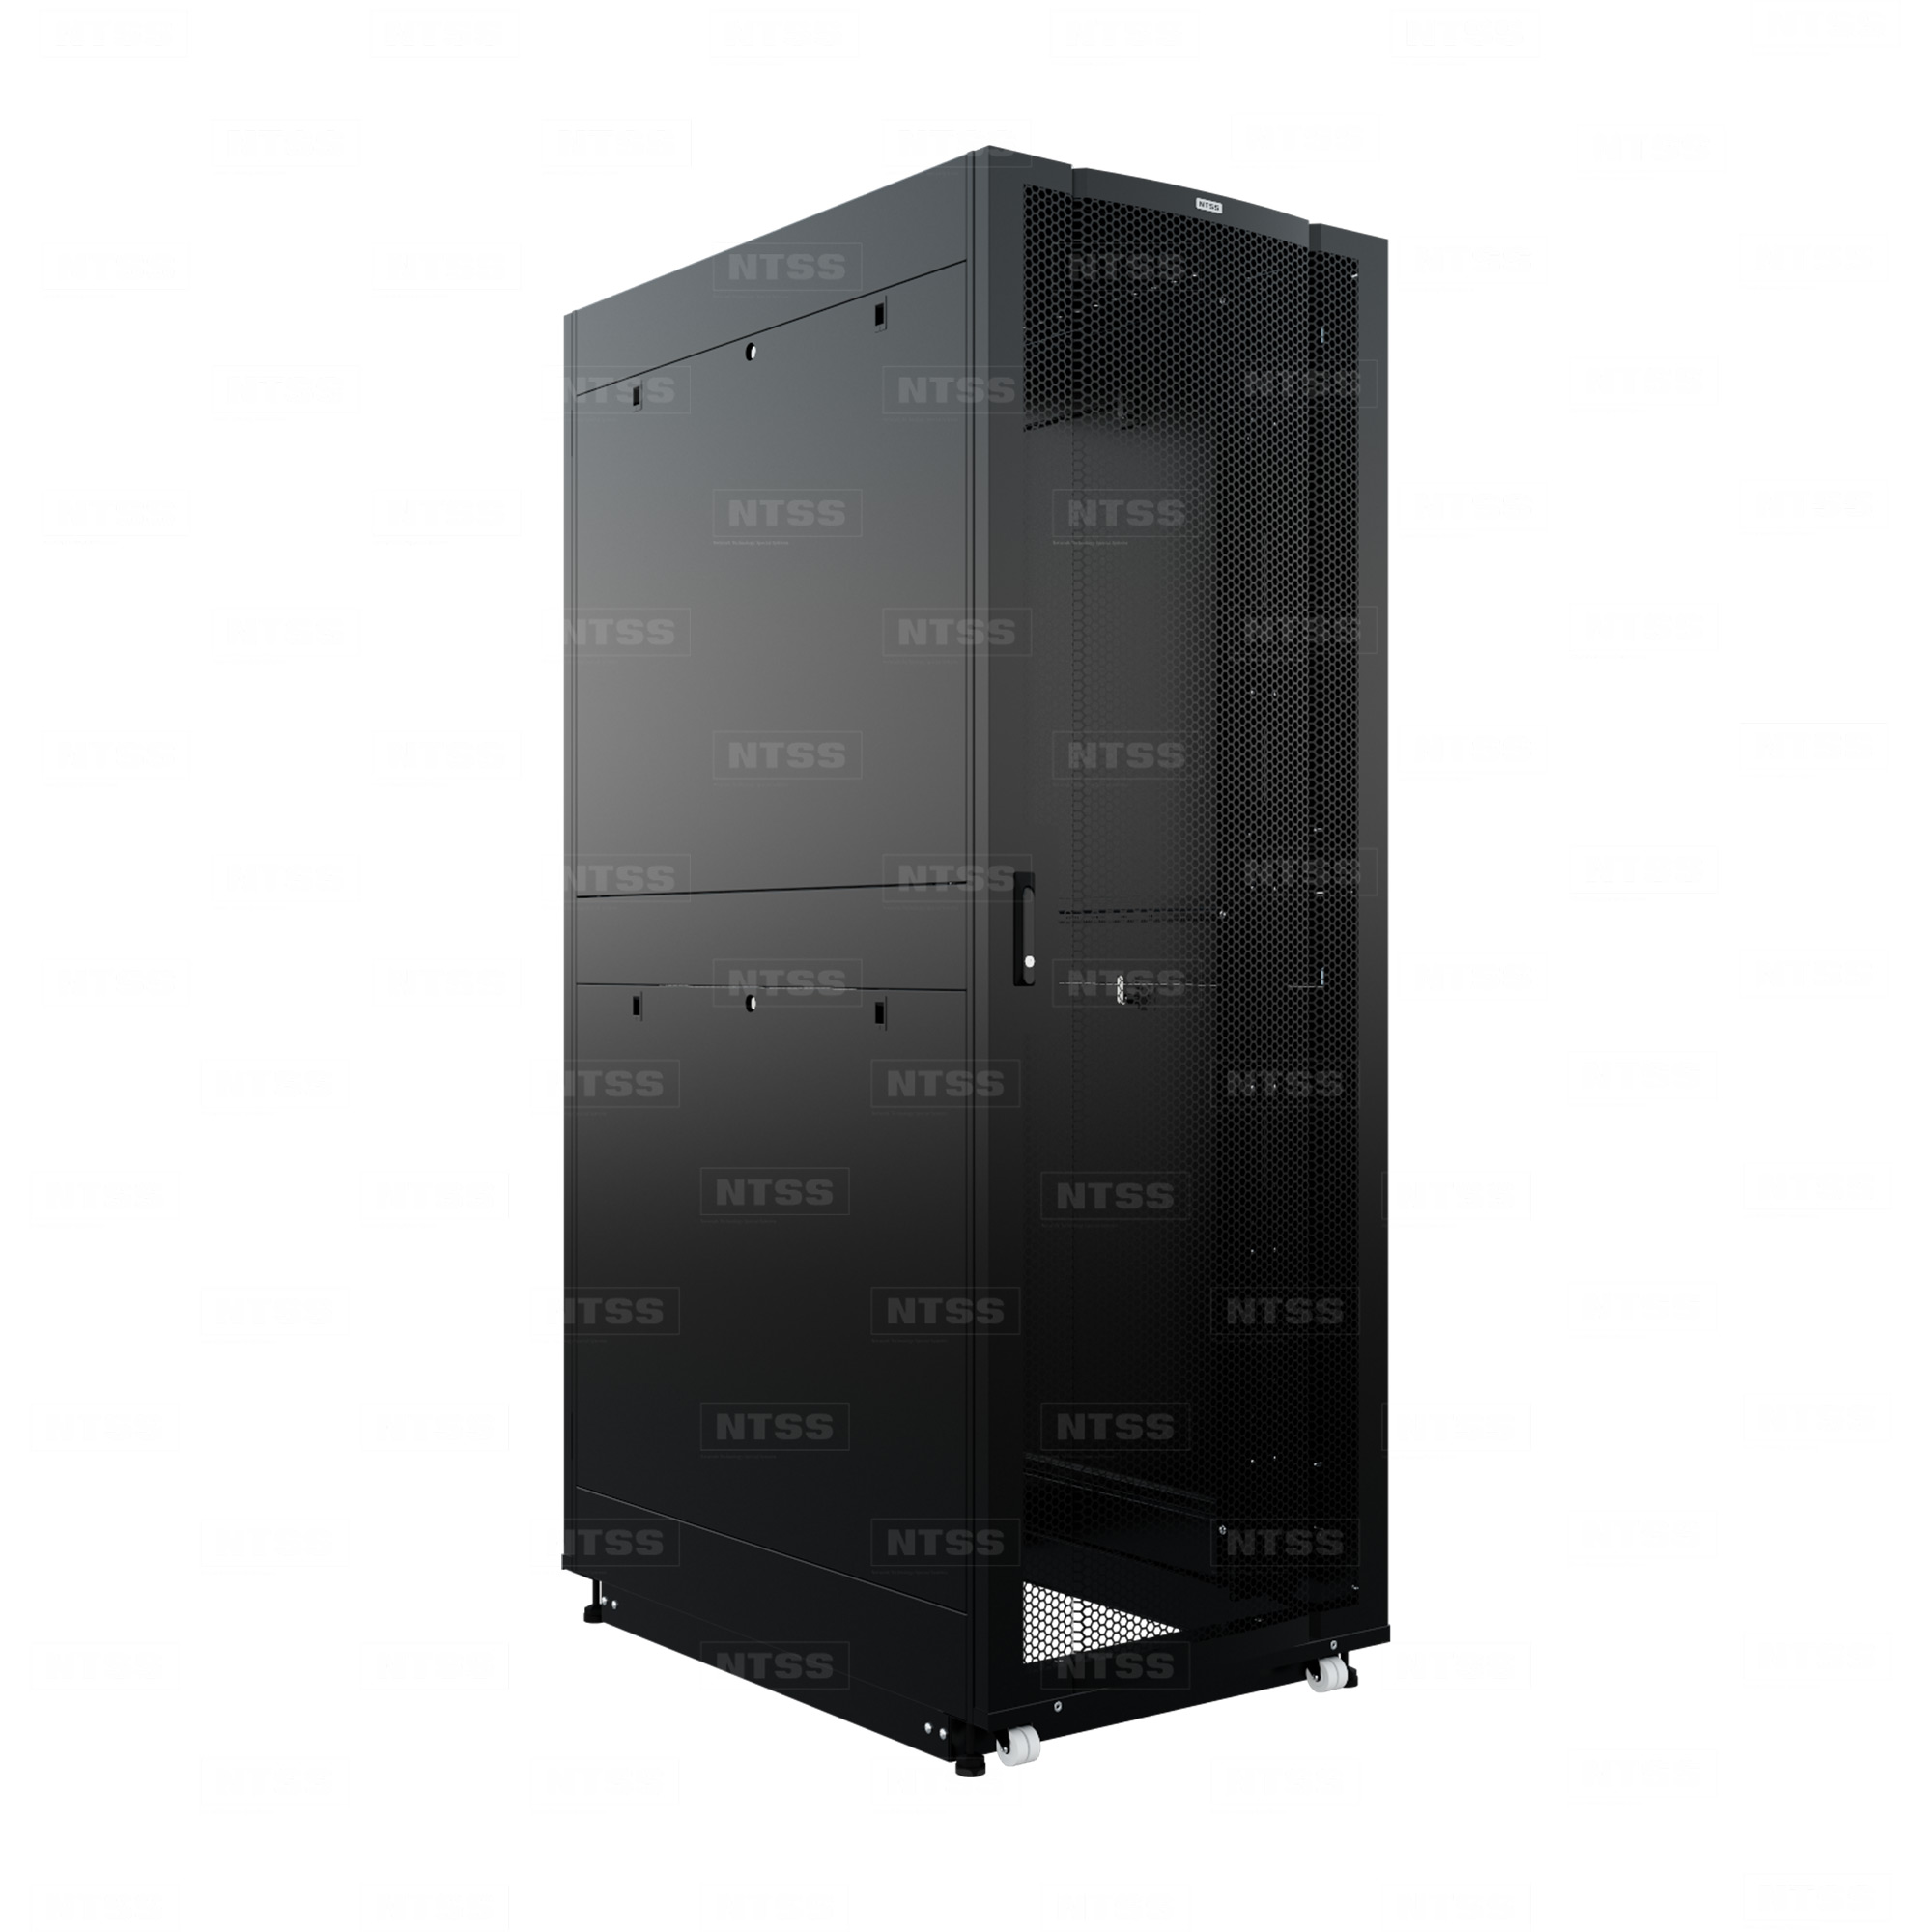 19" Напольный серверный шкаф NTSS ПРОЦОД PC 45U 800х1200 мм, передняя дверь перфорация, задняя дверь распашная двойная перфорированная, боковые стенки, регулируемые опоры, ролики, черный RAL 9005  